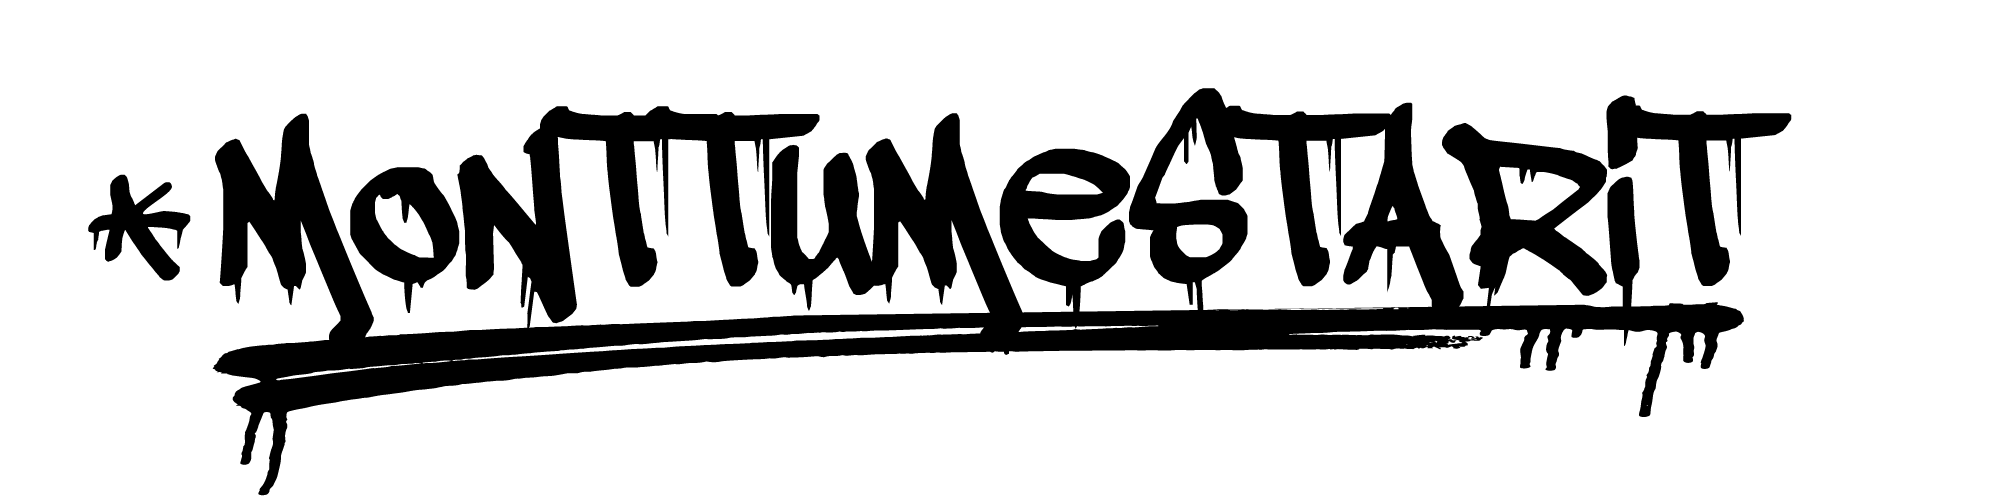 Monttumestarit, tumma logo